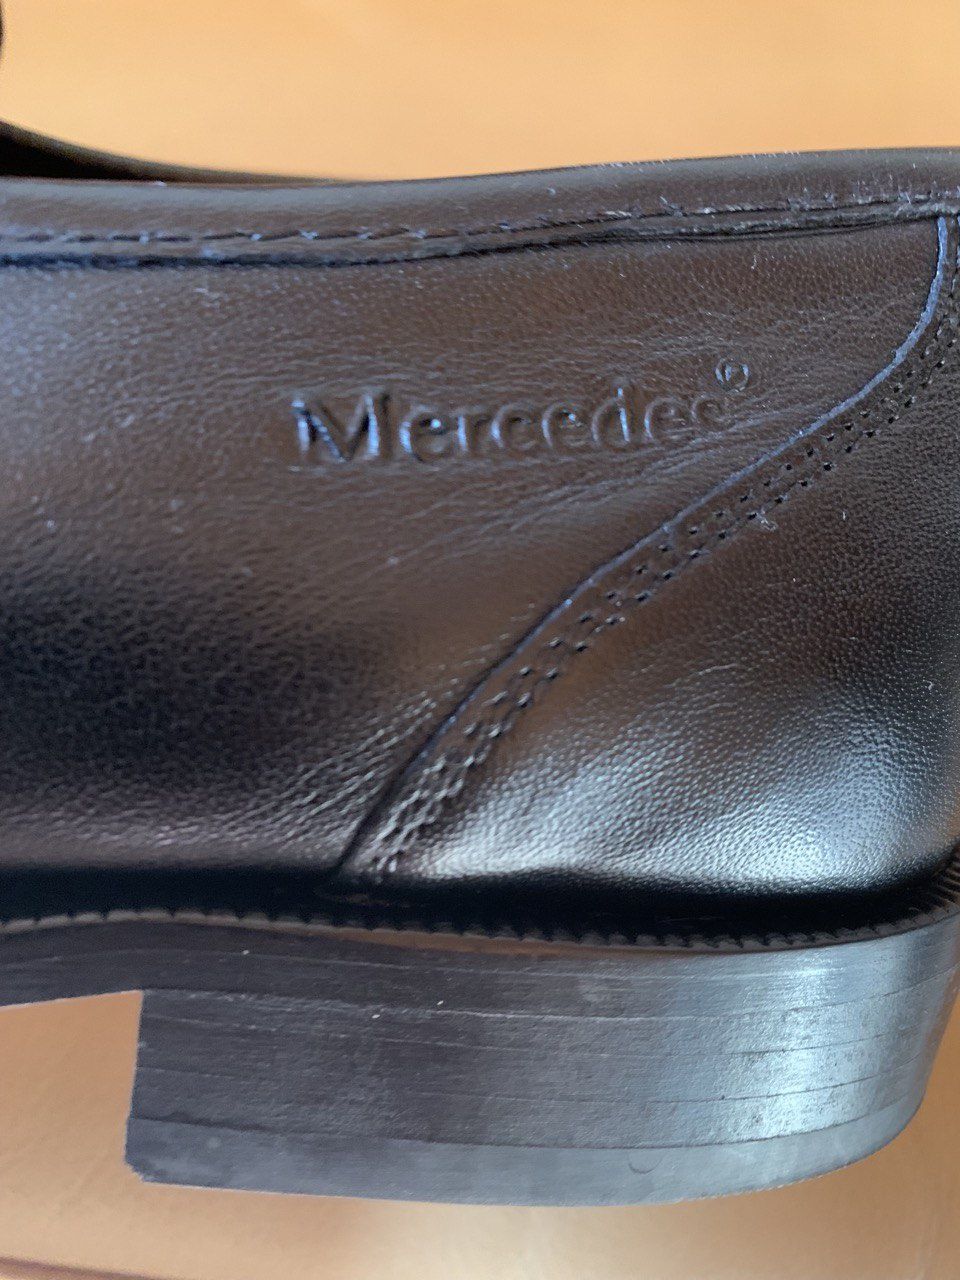 Мужская обувь Европейского бренда «Mersedes»